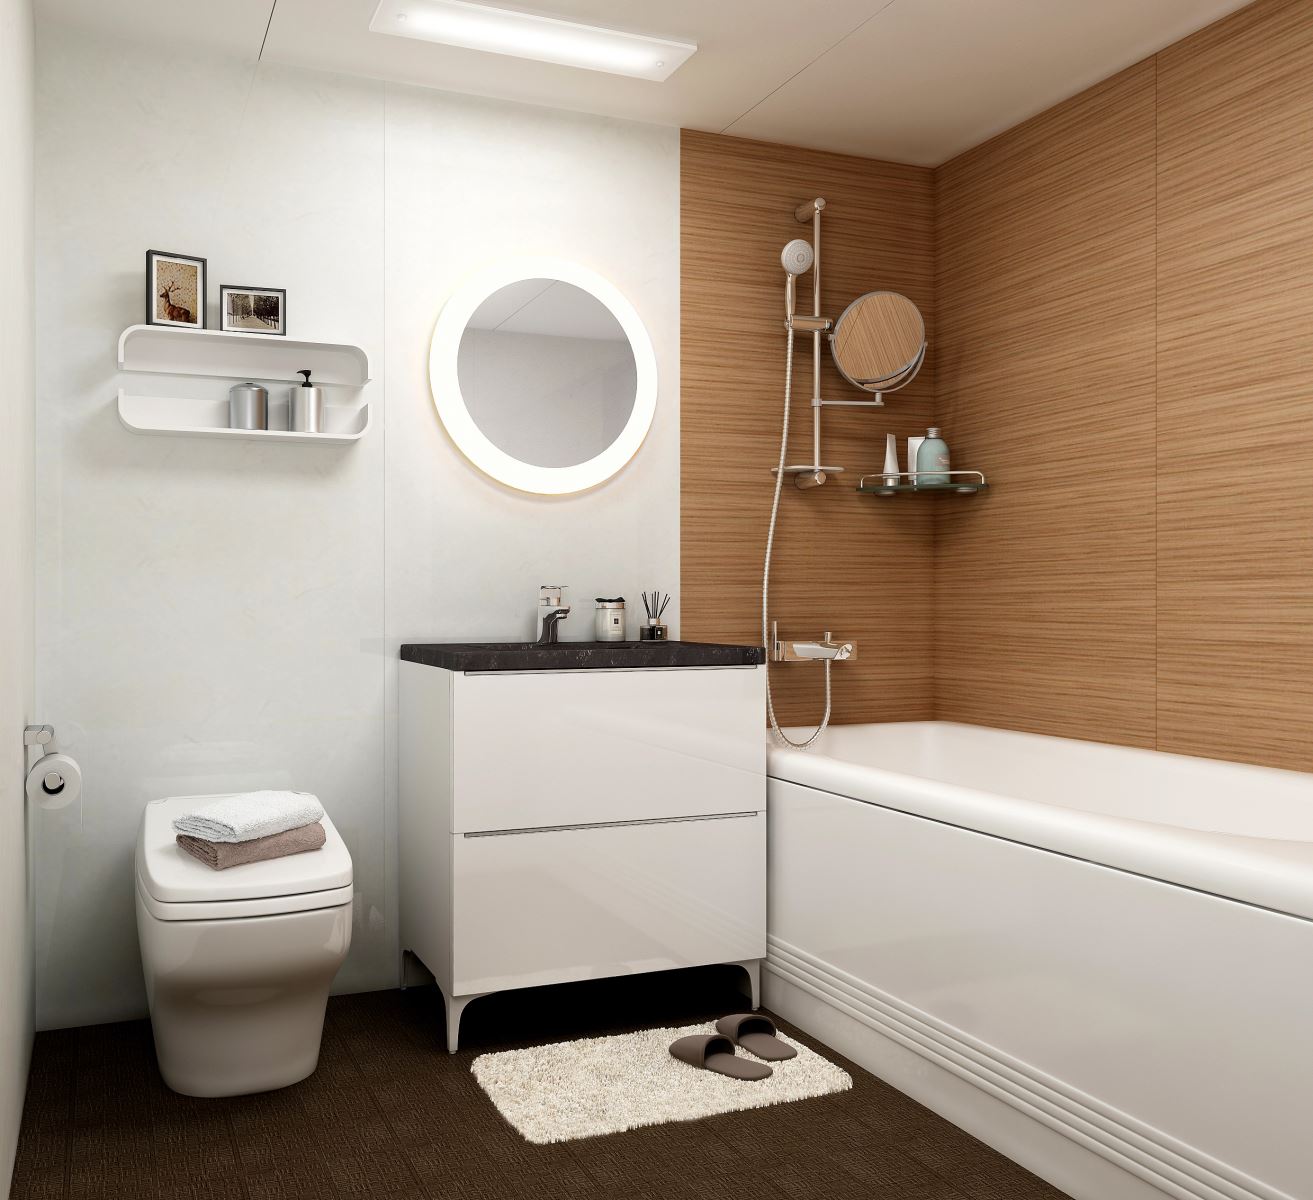 Phòng vệ sinh là nơi có nhiều âm khí, nên cẩn trọng khi bố trí phòng vệ sinh trong nhà